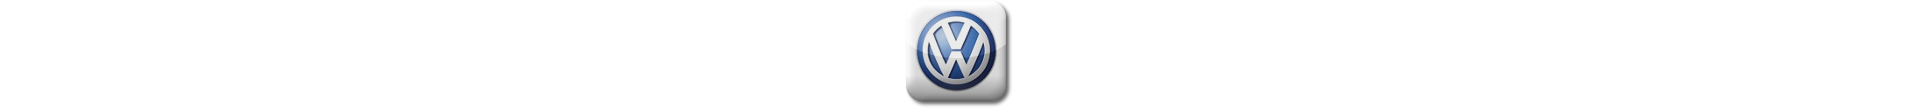 Boitier additionnel Volkswagen Essence Evolussem